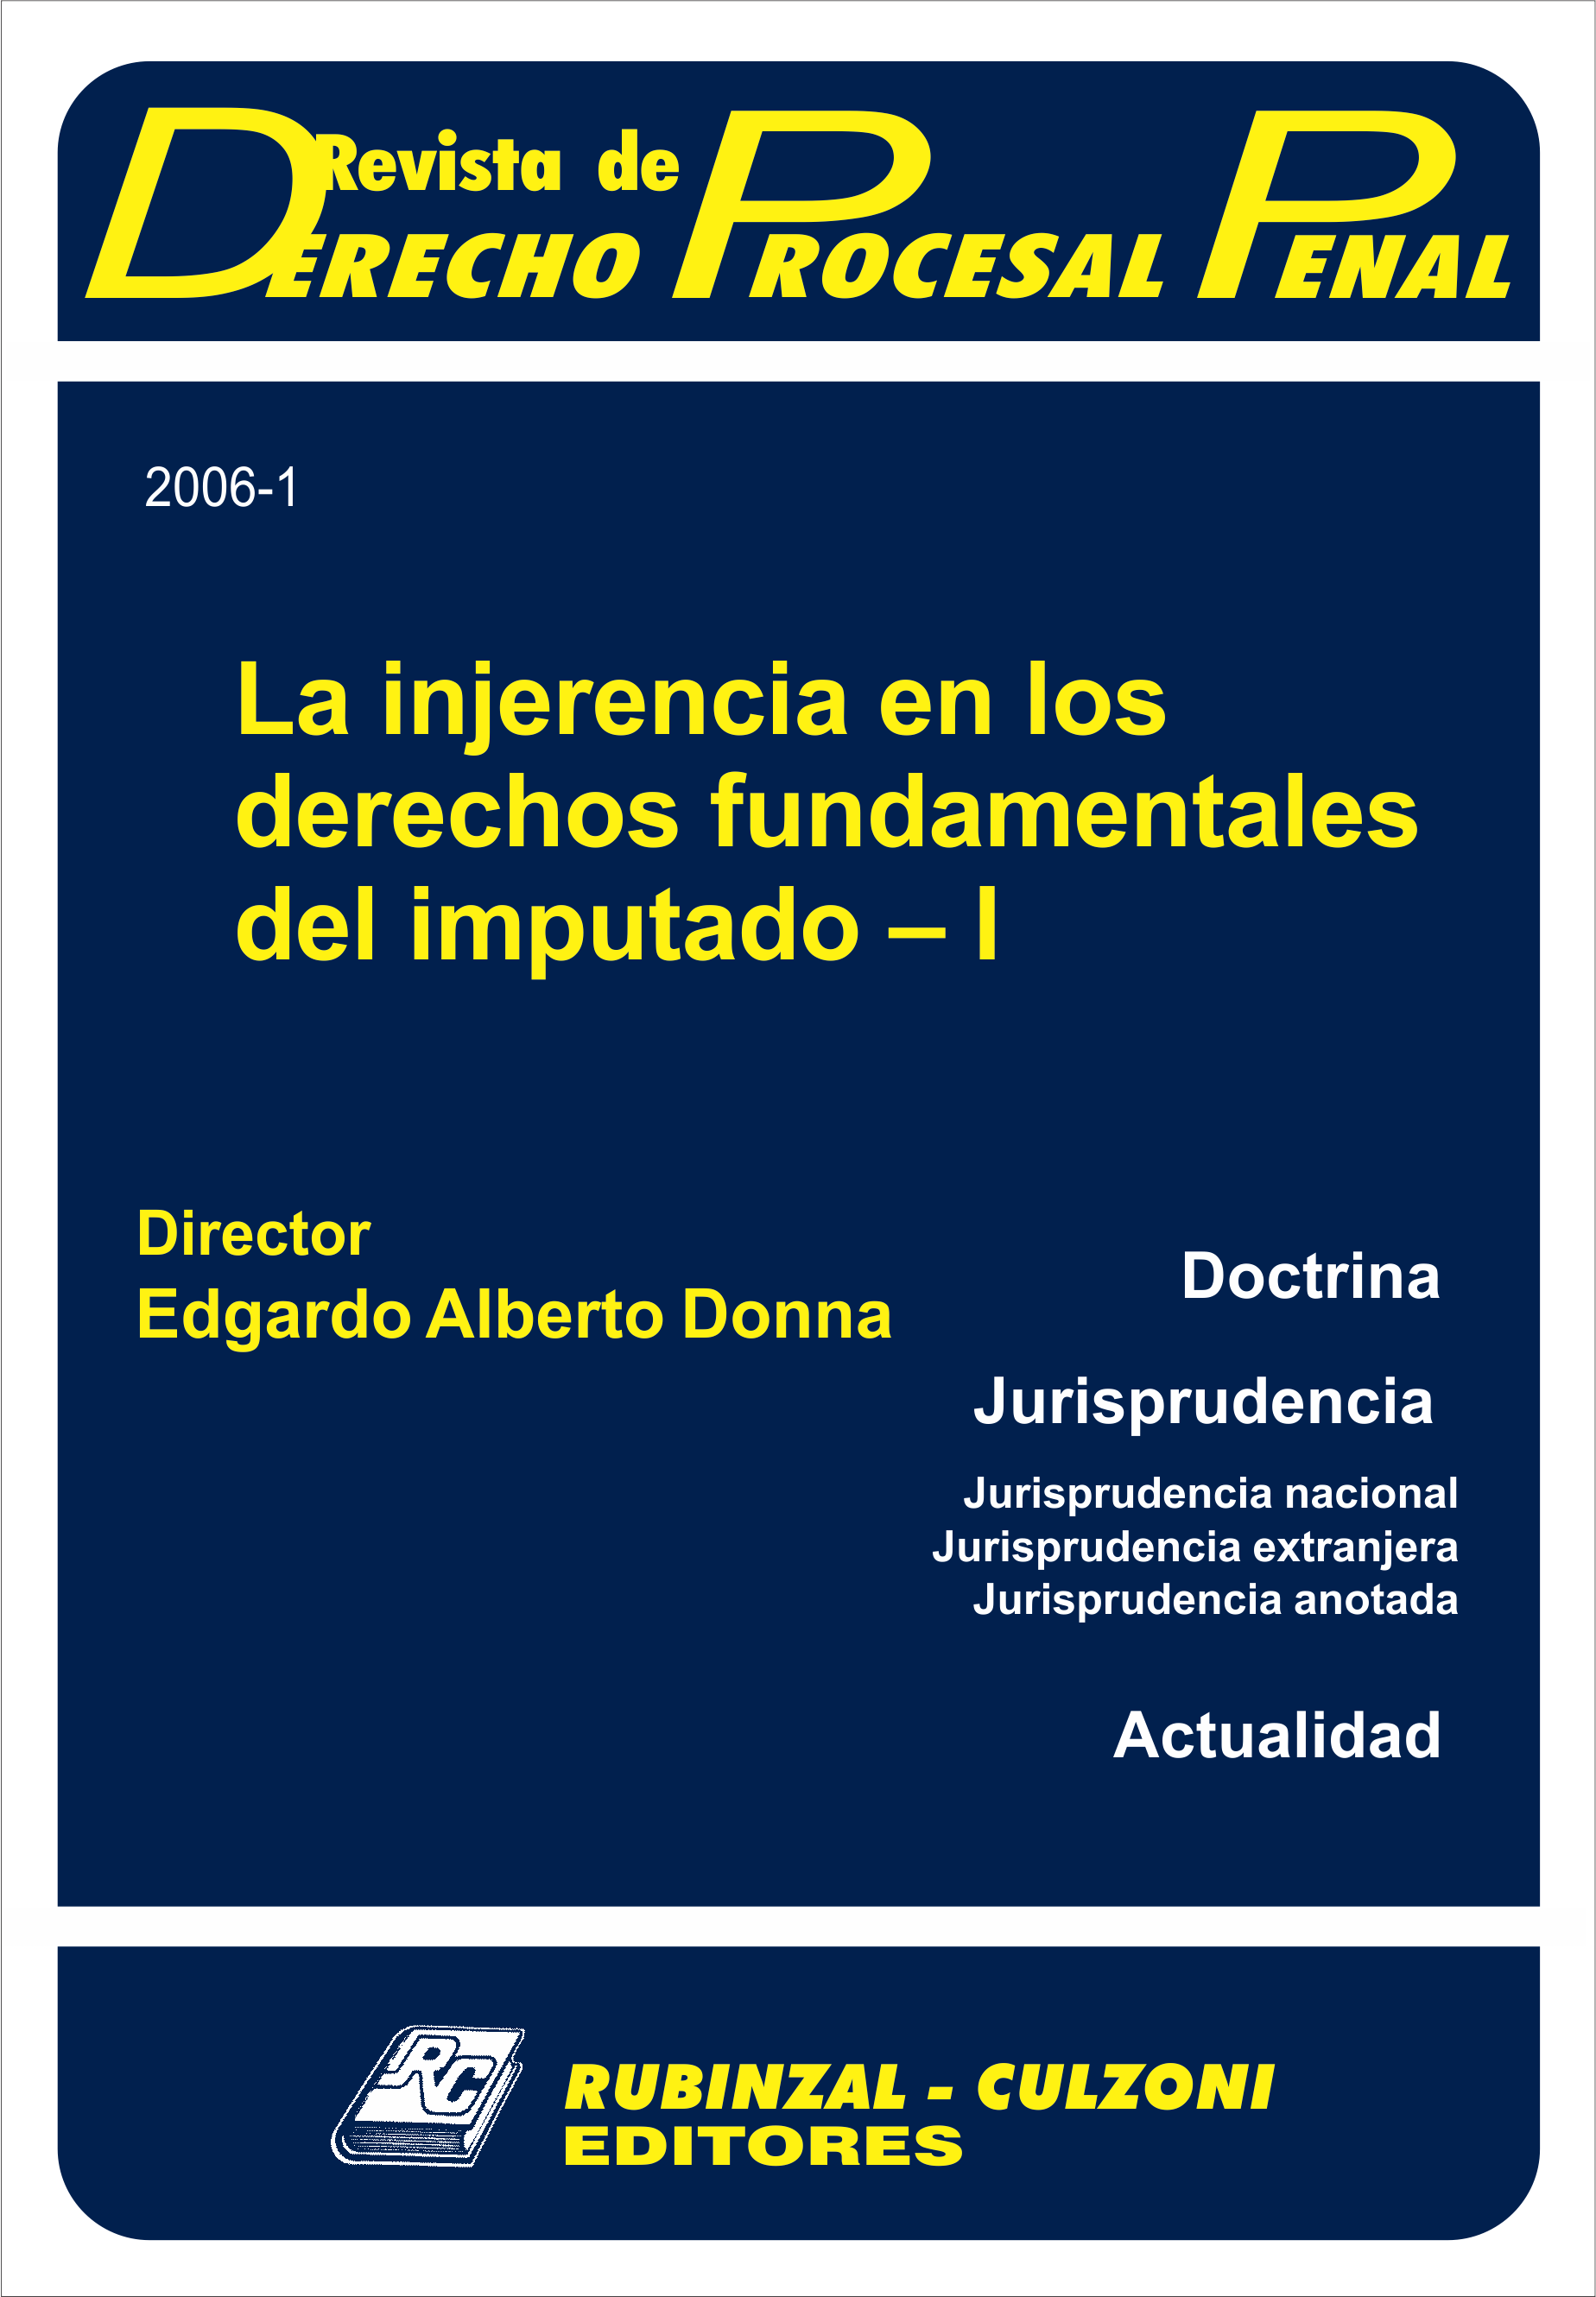 Revista de Derecho Procesal Penal - La injerencia en los derechos fundamentales del imputado - I